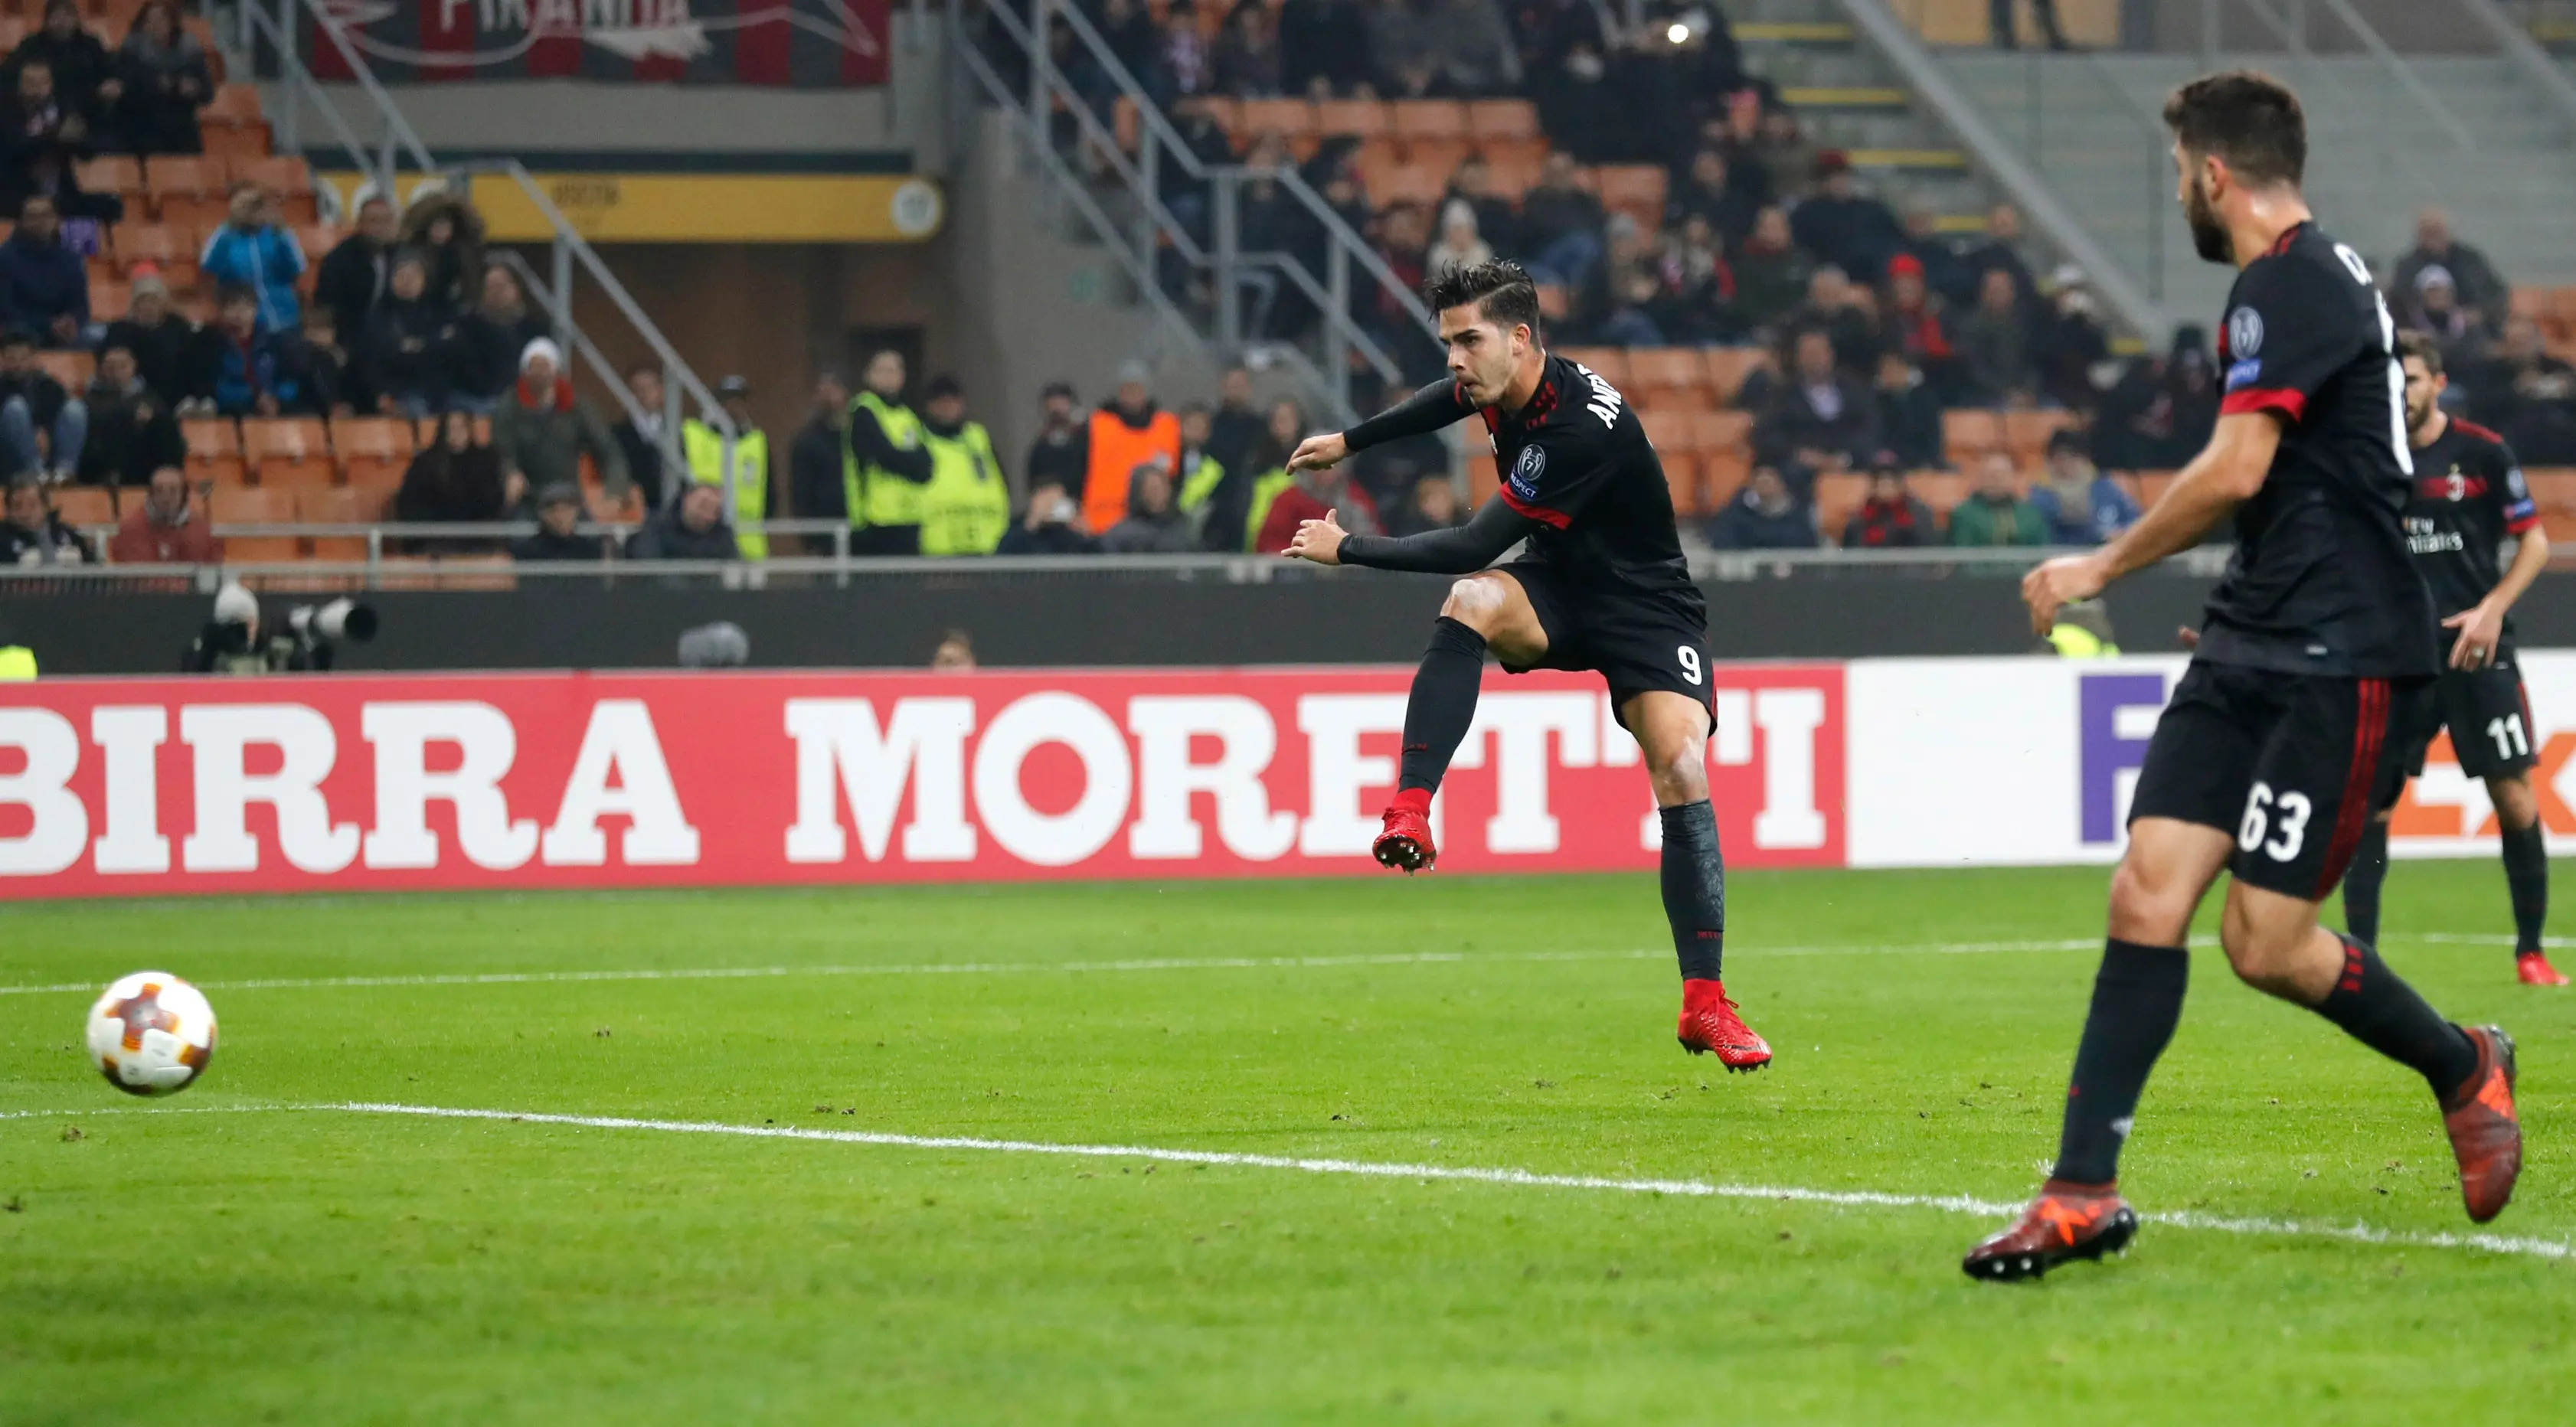 Pemain AC Milan, Andre Silva melakukan tendangan ke gawang Austria Wien pada matchday kelima Liga Europa di Stadion San Siro, Jumat (24/11). AC Milan memastikan diri lolos sebagai juara Grup D usai menang 5-1. (AP/Antonio Calanni)